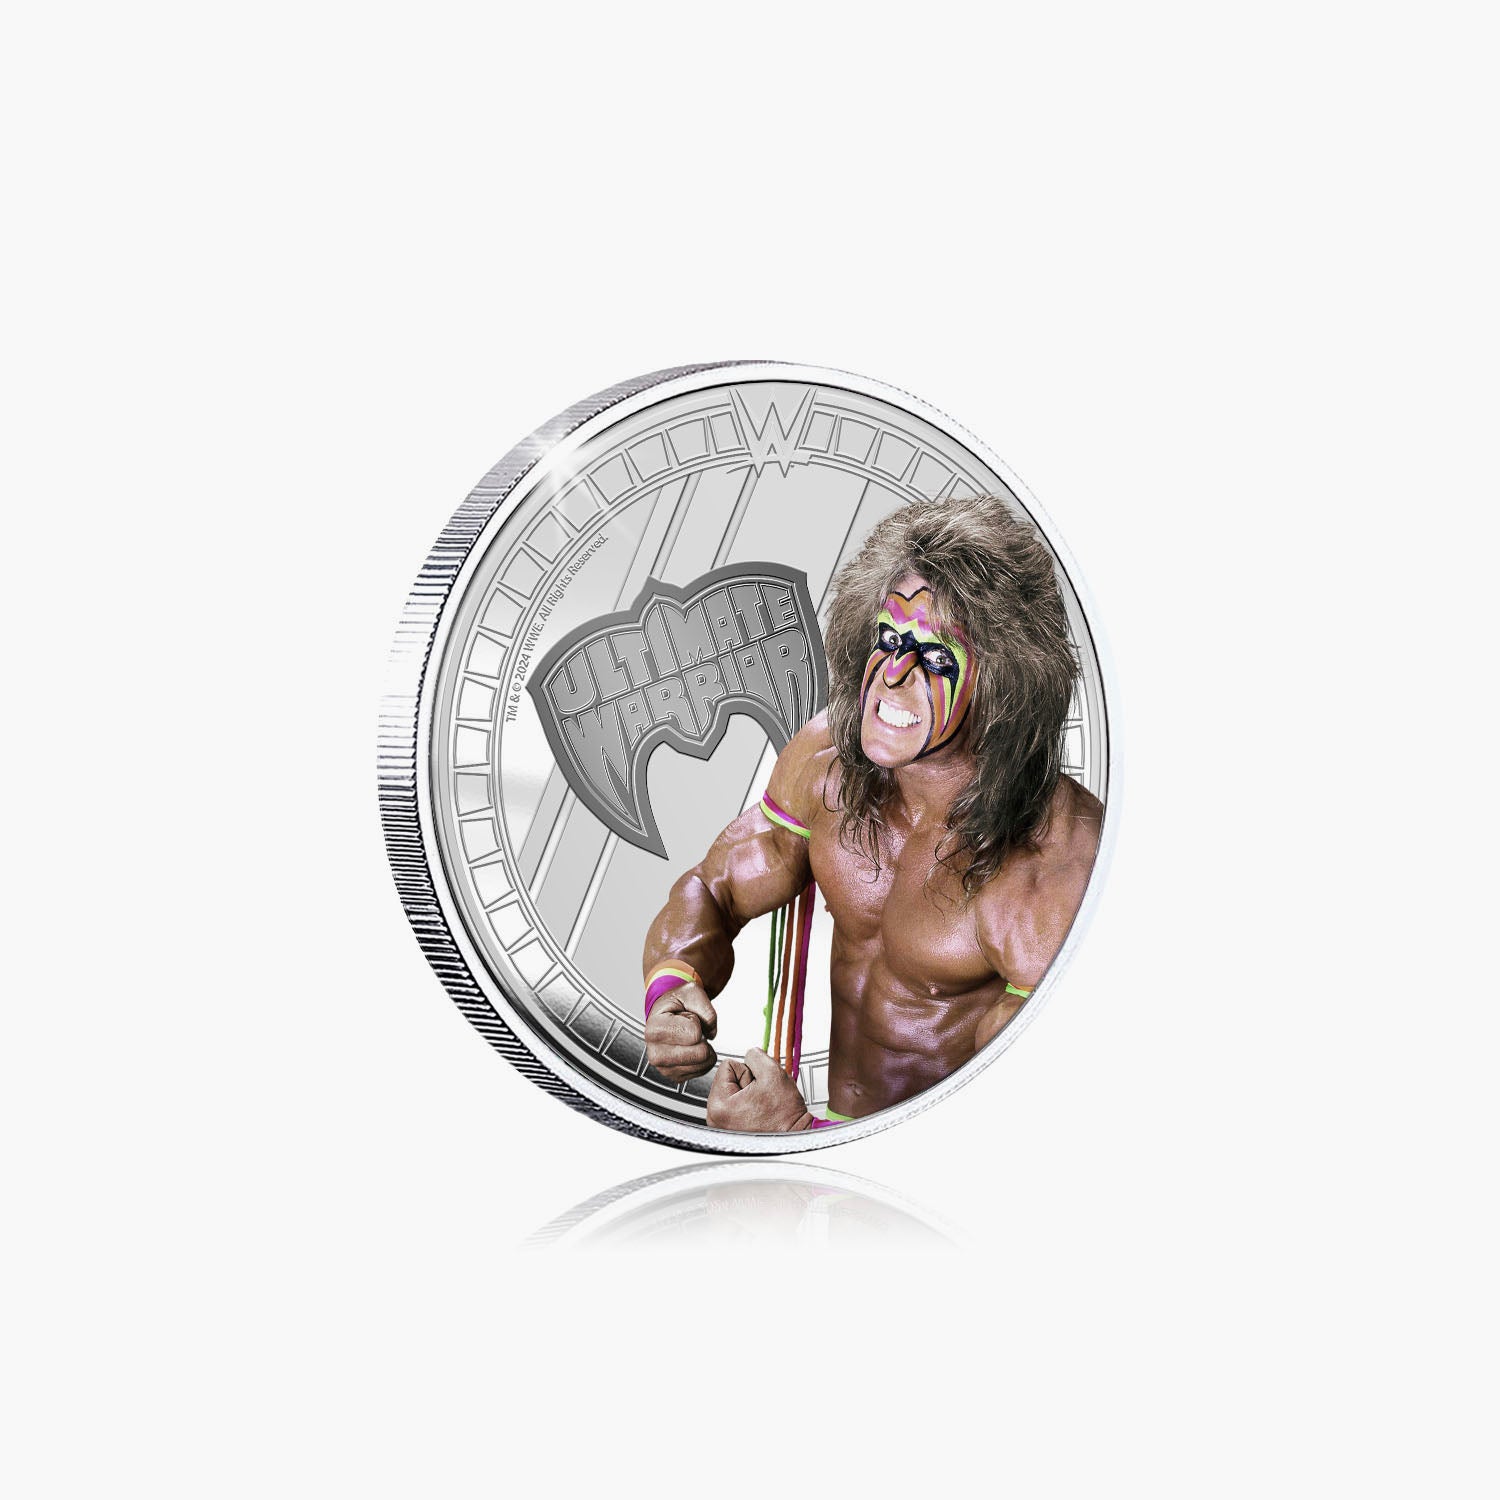 Collection commémorative WWE - Ultimate Warrior - Commémorative plaquée argent 32 mm